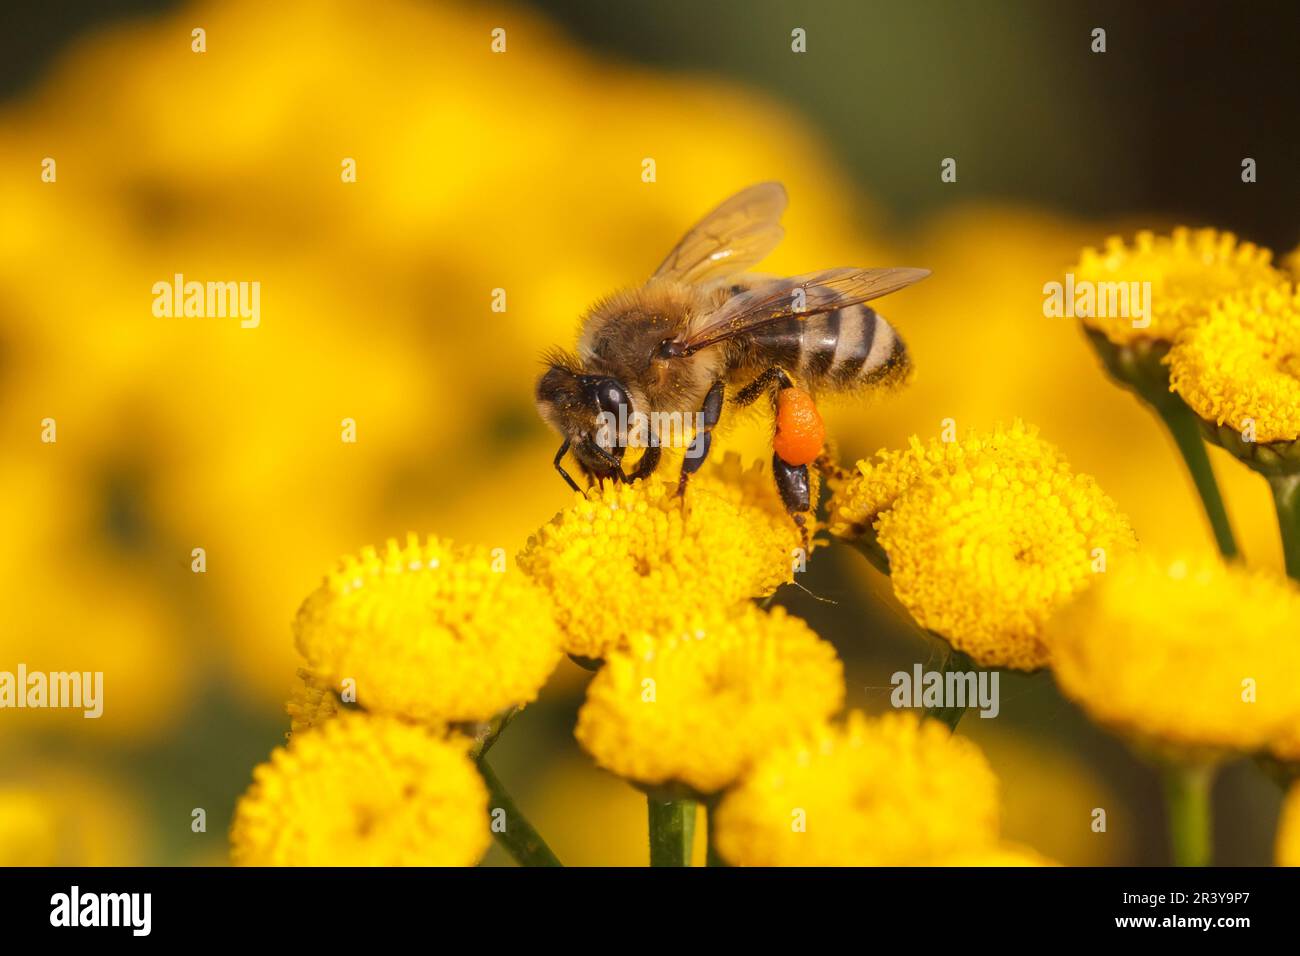 APIs mellifera, connu sous le nom de Honeybee (abeille occidentale), abeille européenne, abeille occidentale Banque D'Images